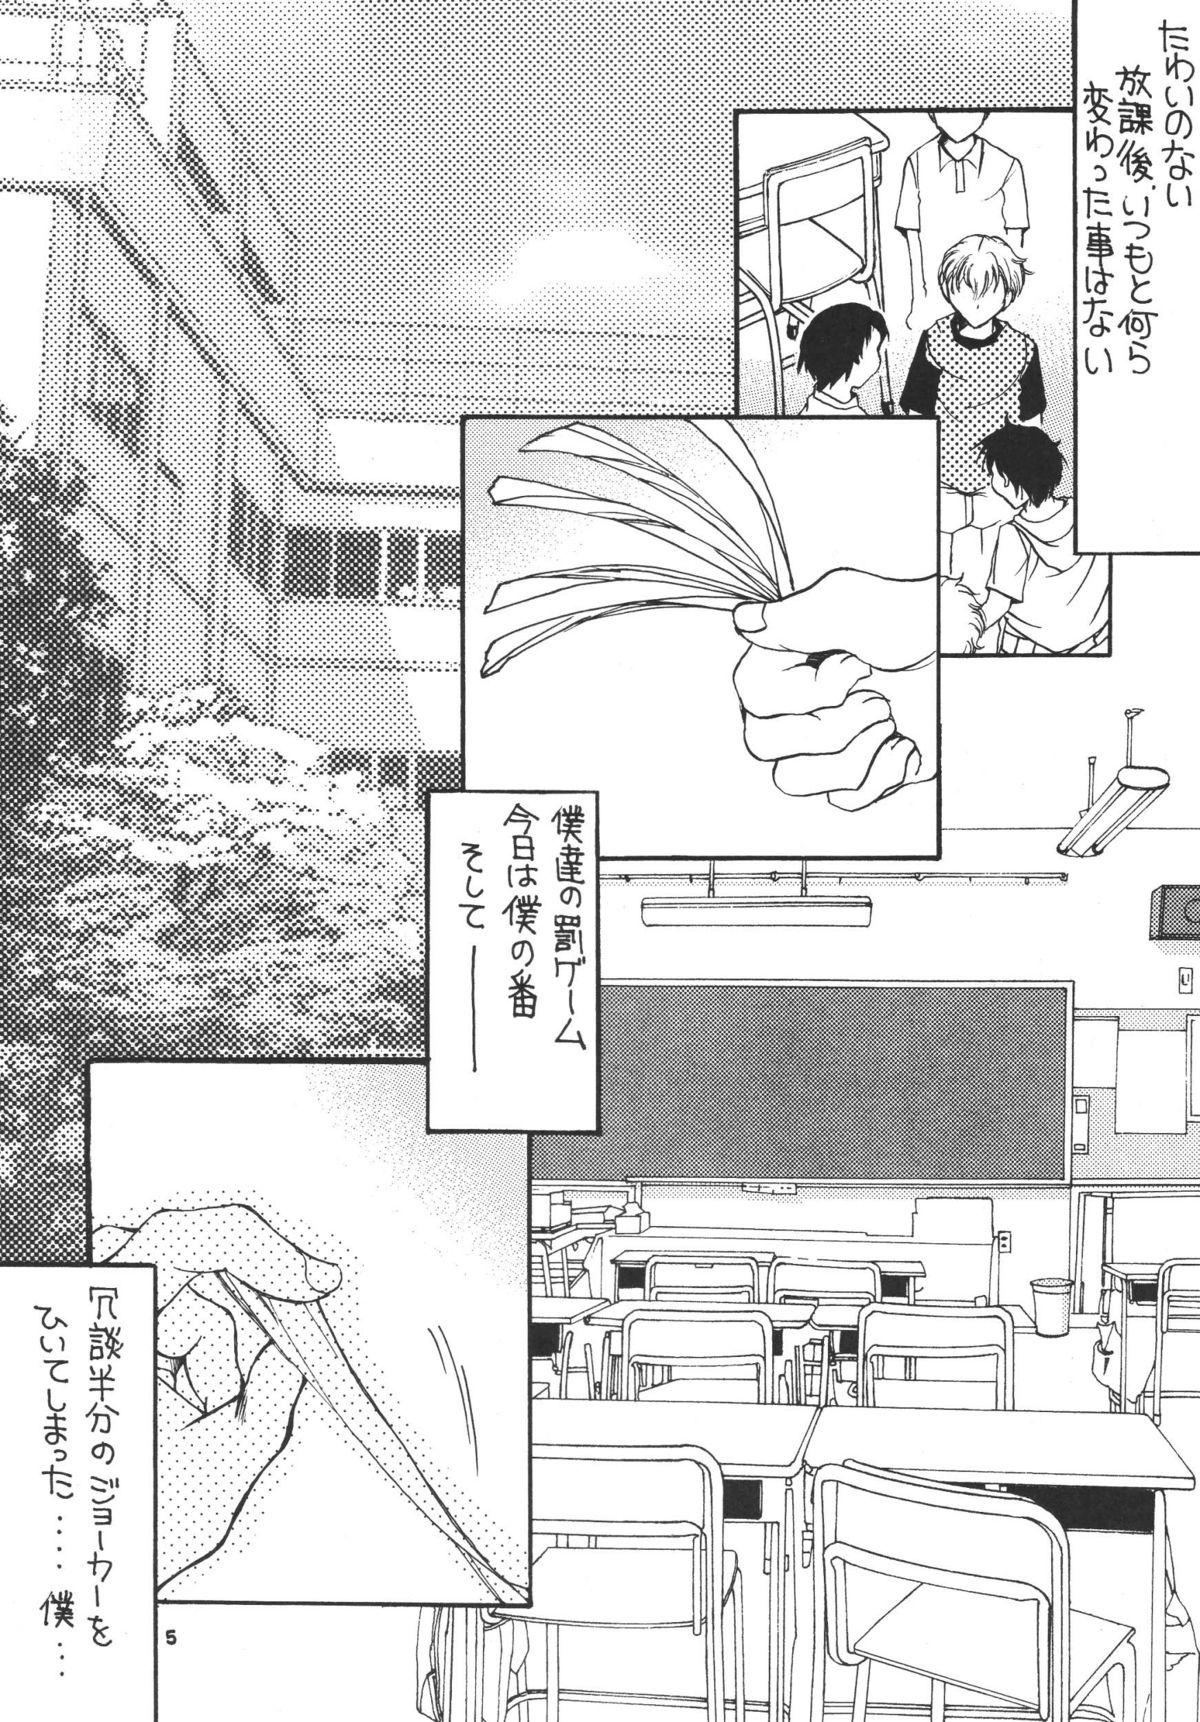 Grosso Tsukutsuku Haha 3 Bdsm - Page 5